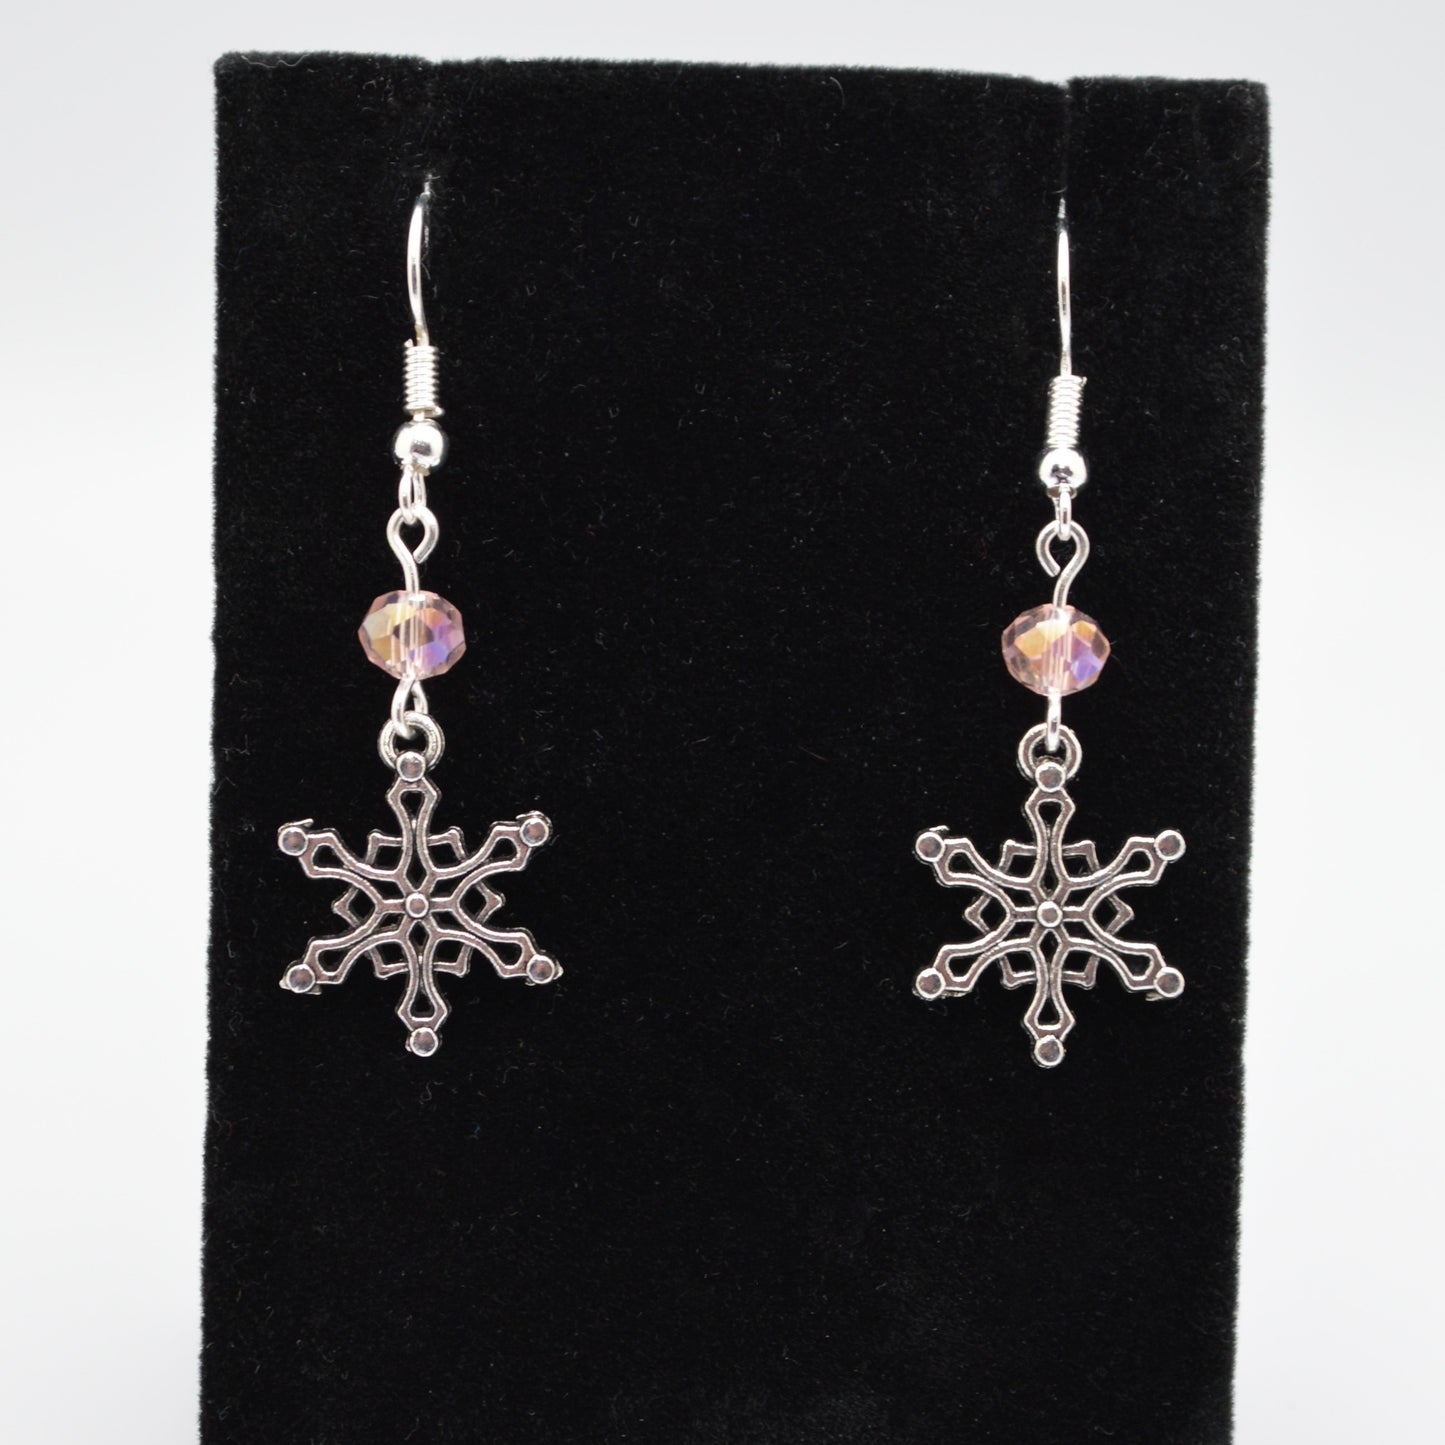 Snowflake Earrings #4 (Light Pink)